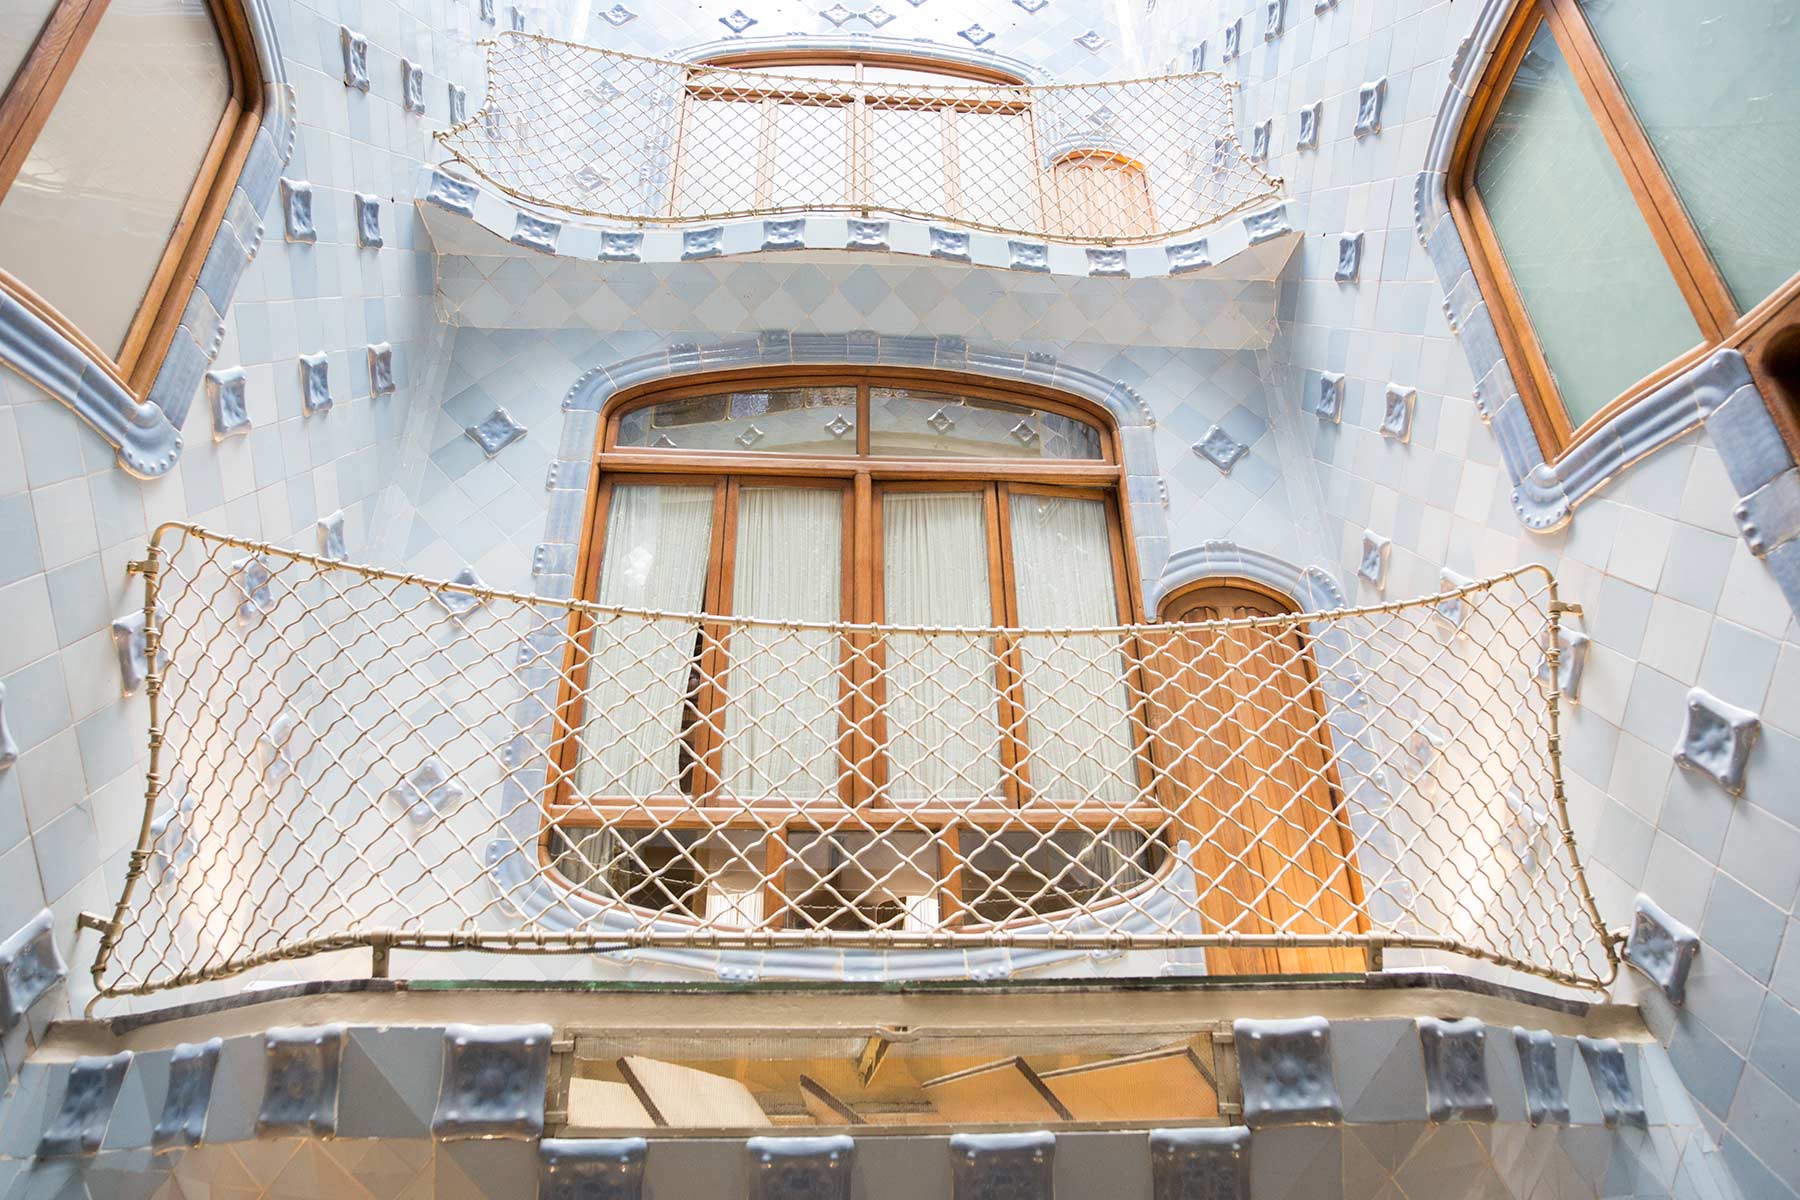 Casa Batlló i Barcelona